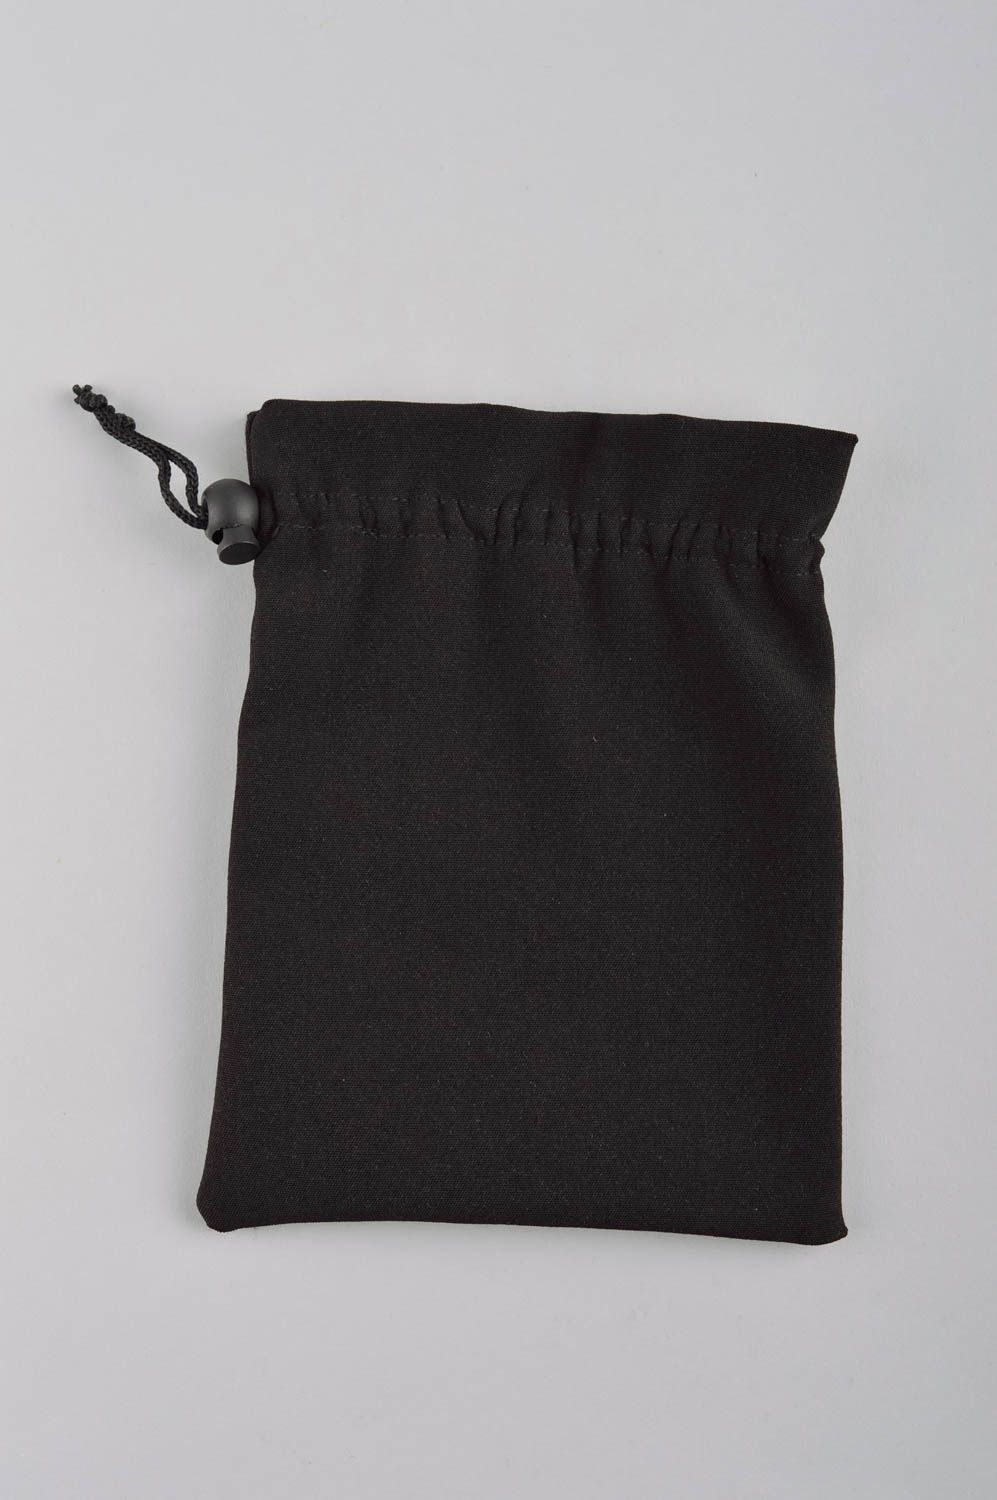 Женский кошелек мешочек для монет ручной работы черный кошелек из ткани вышитый фото 3